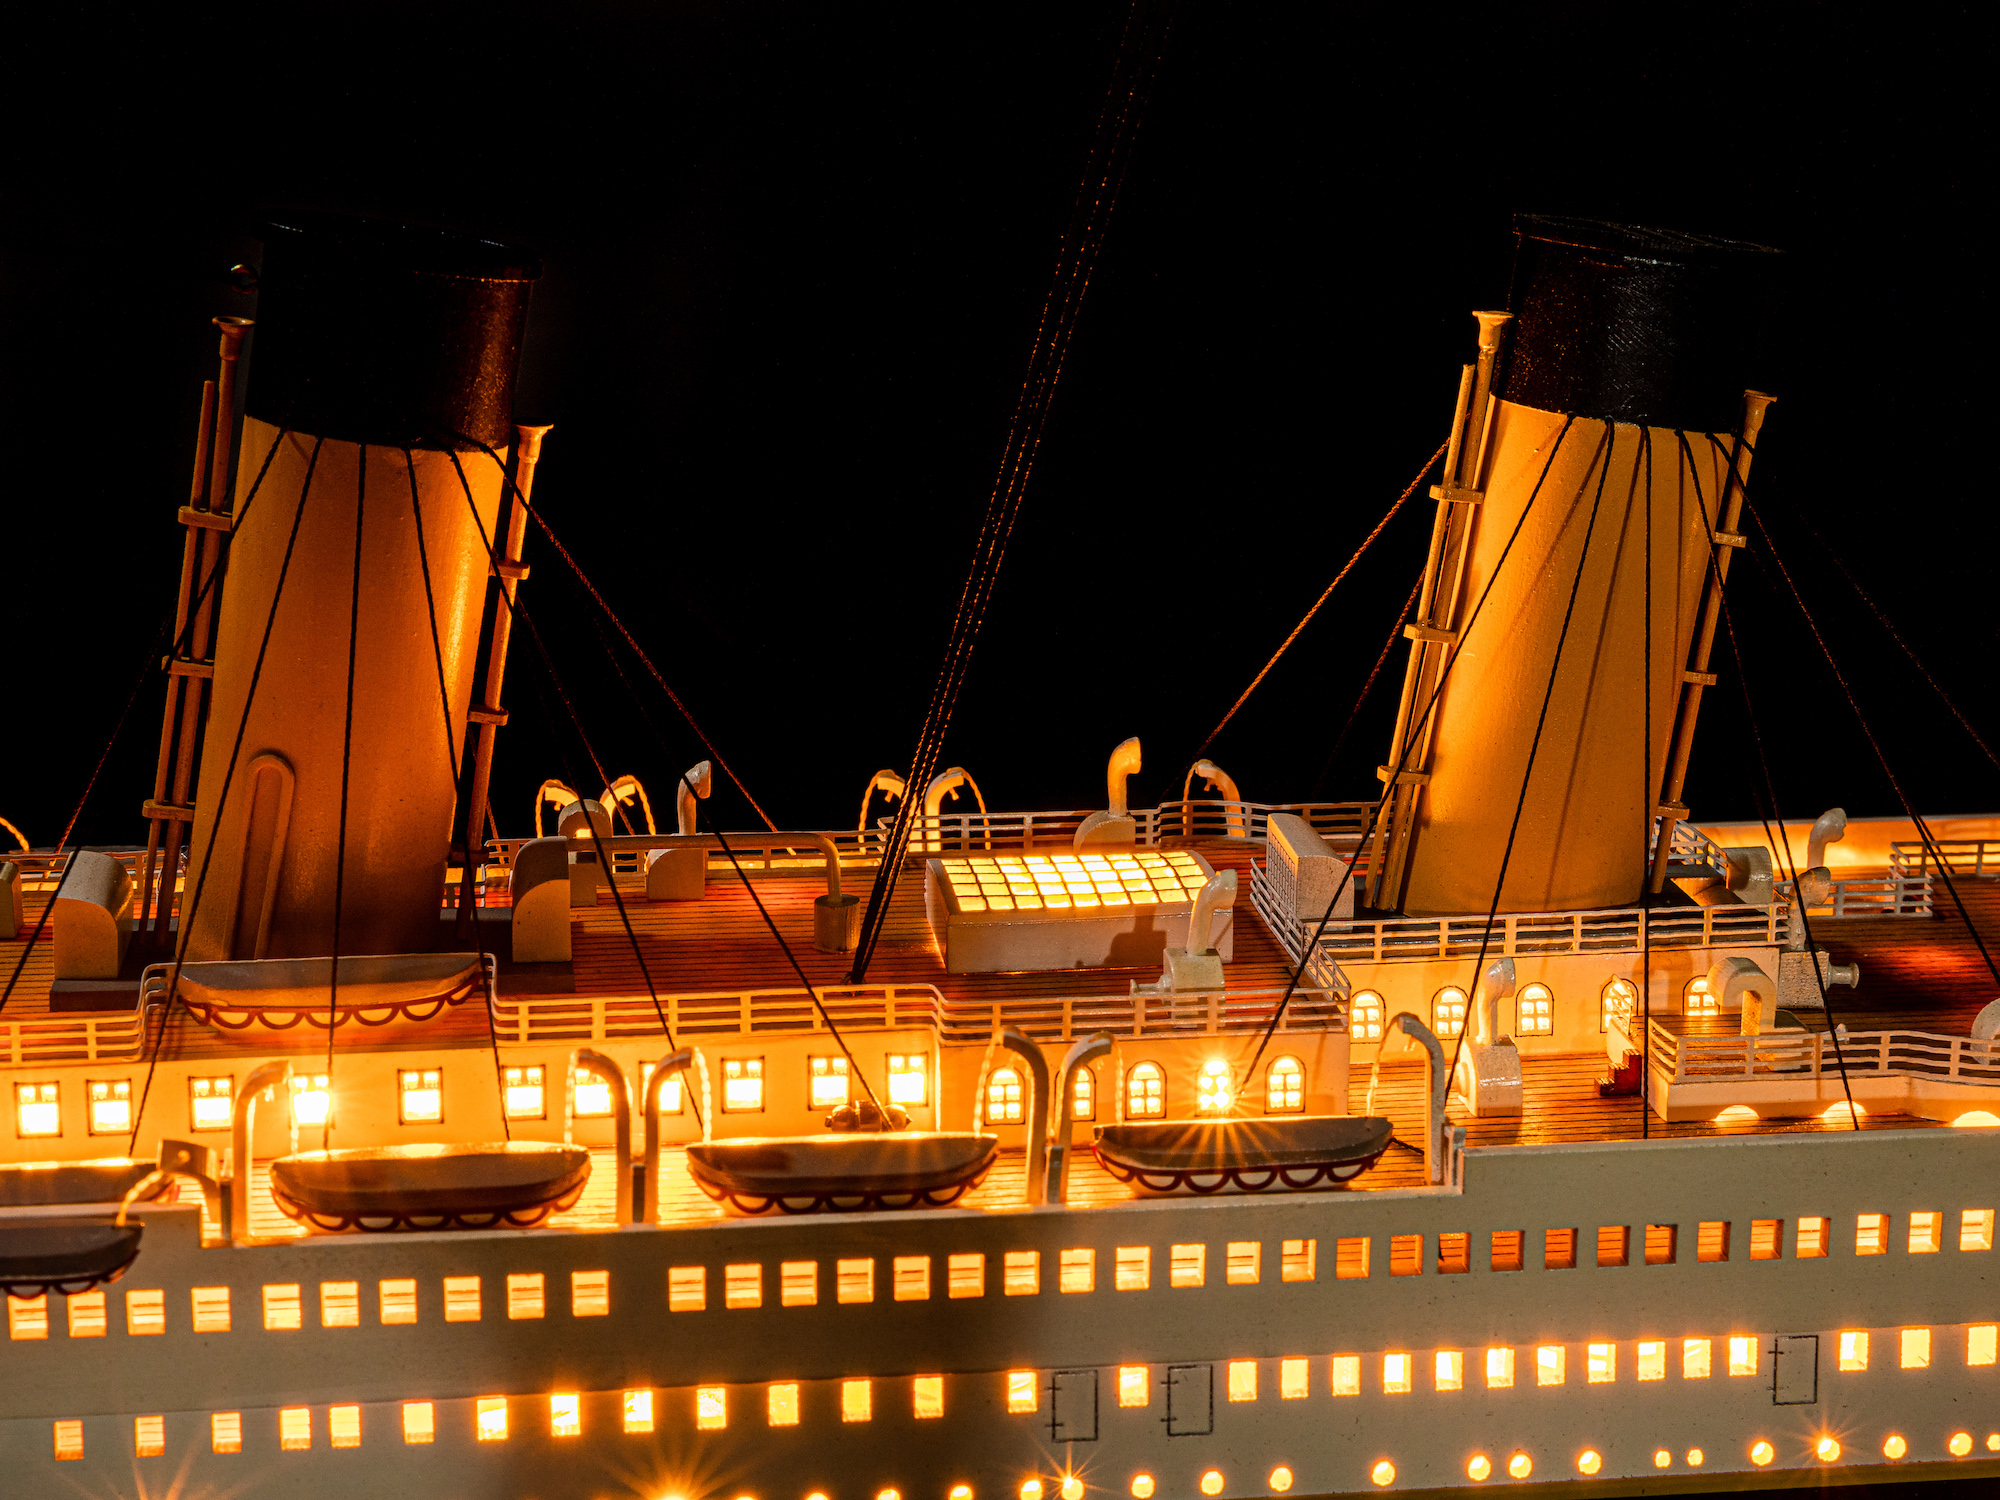 Maquette de paquebot Le Titanic sur Moinat SA - Antiquités